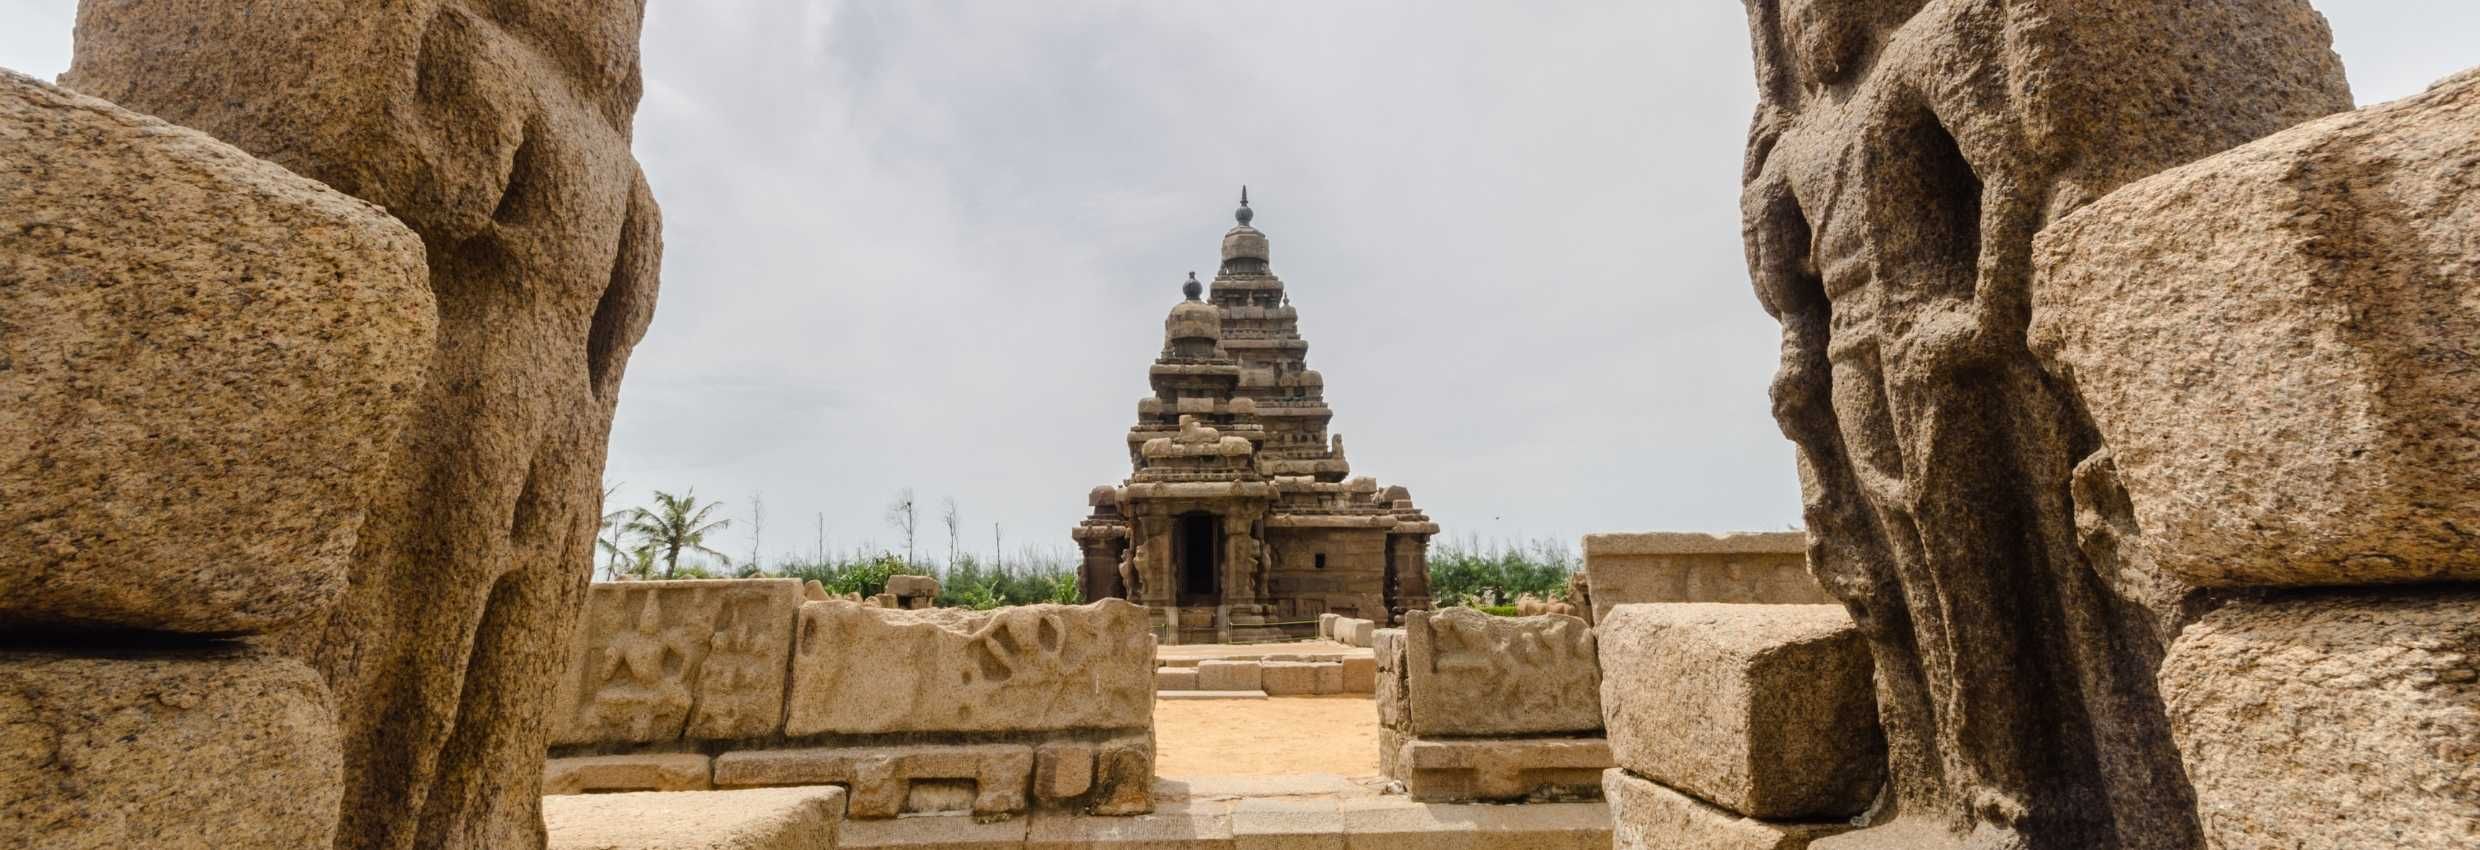 Chennai - Mahabalipuram & Pondicherry